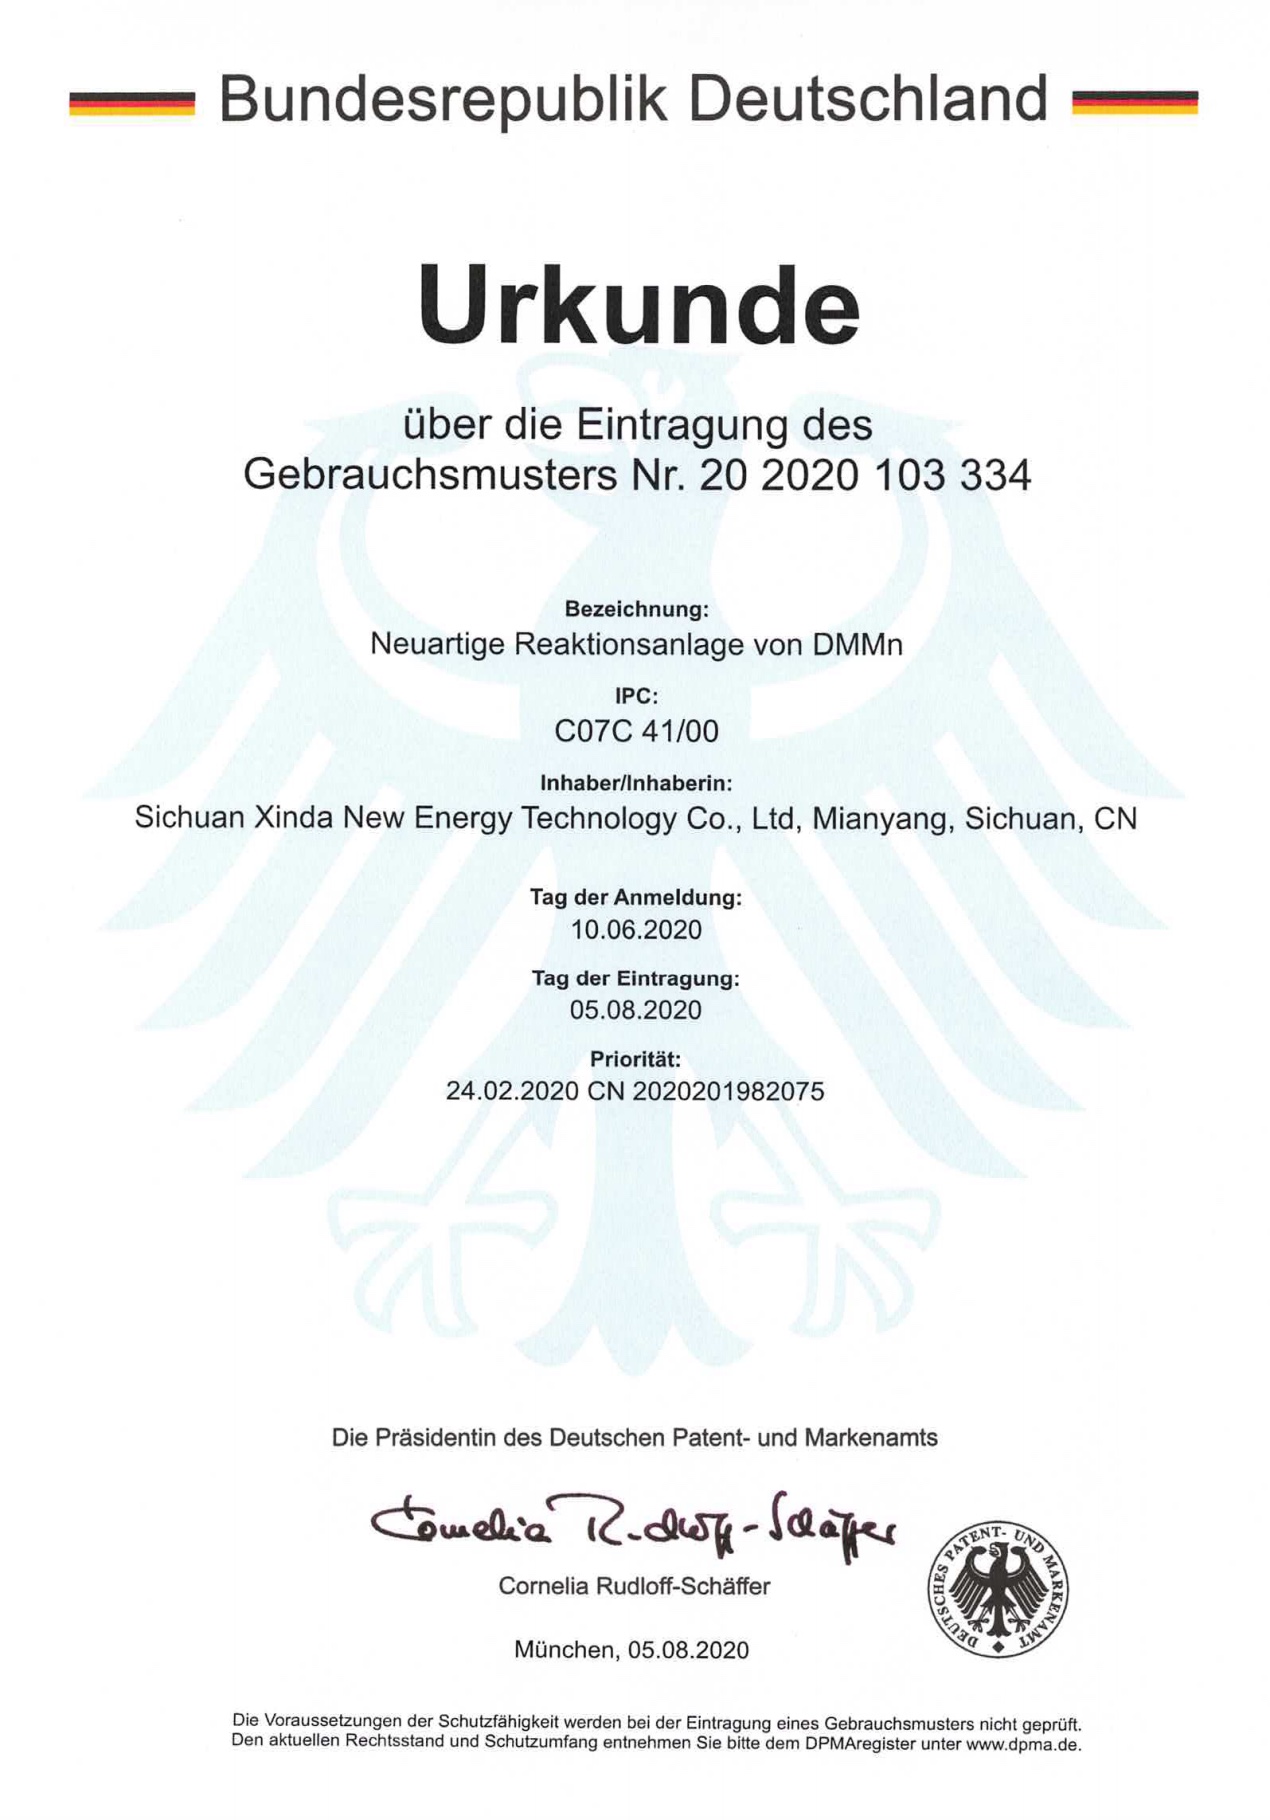 German Patent: A new DMMn Reaction Unit